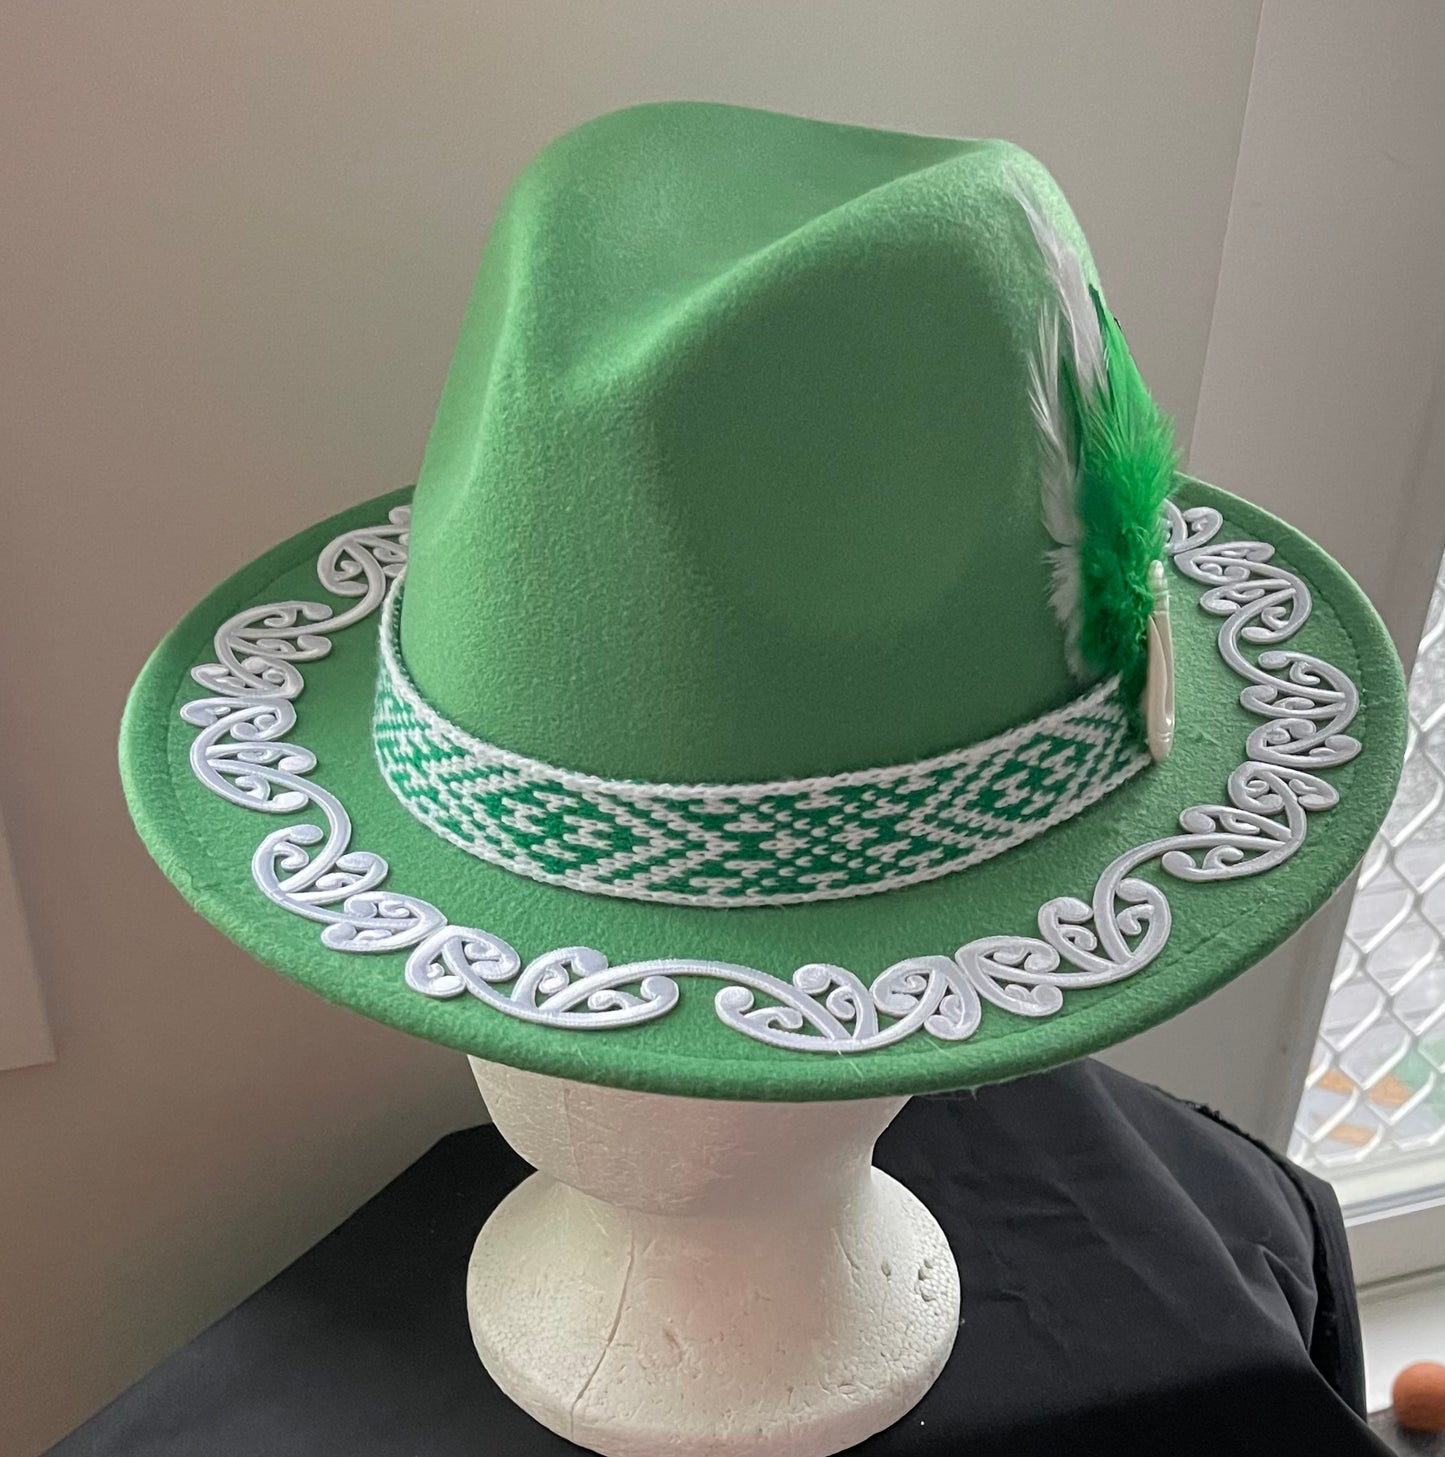 Potae - Emerald Fedora Felt Hat